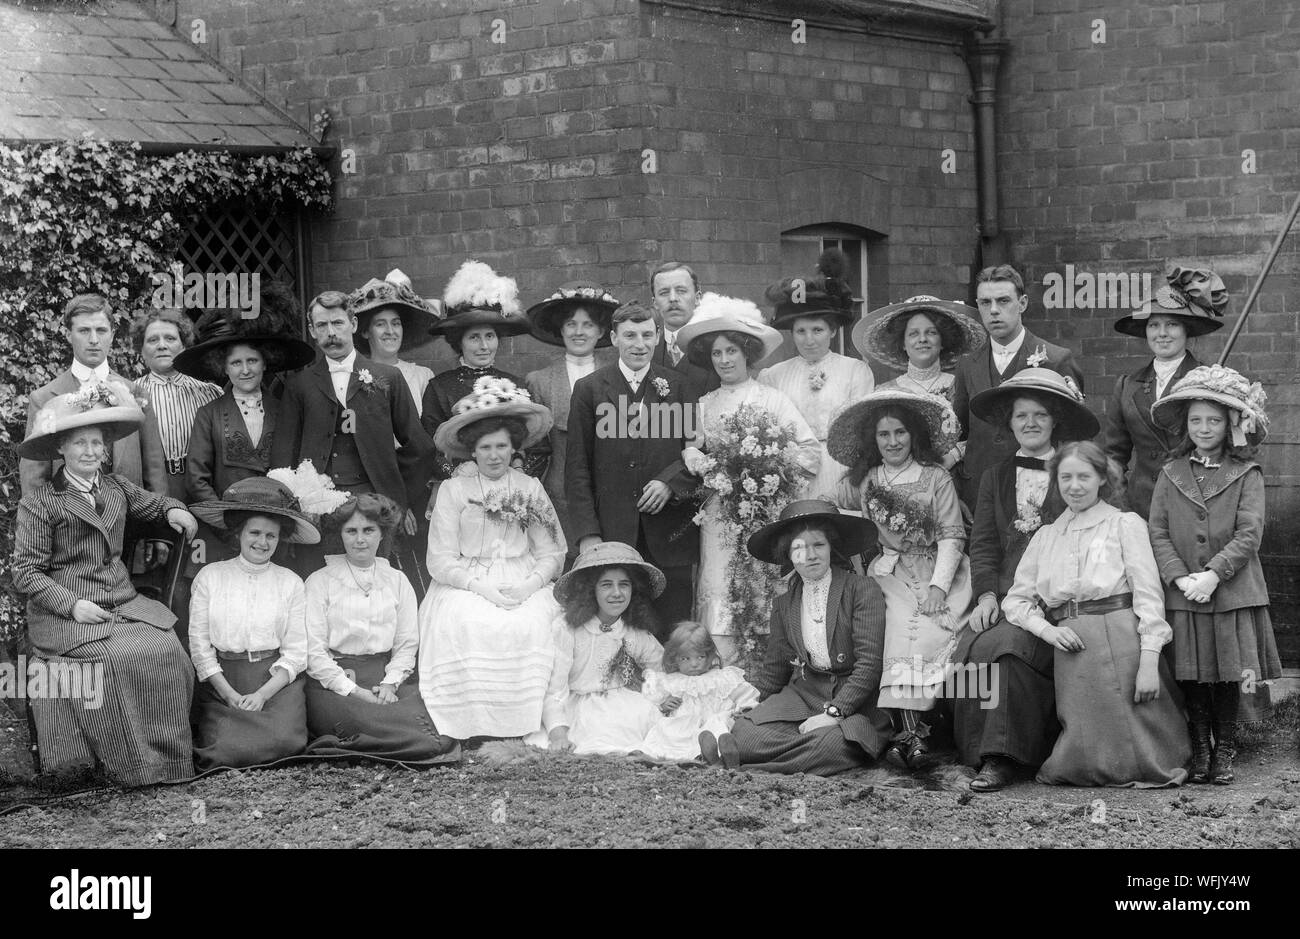 Un vintage style victorien ou au début de l'Edwardian Photographie noir et blanc montrant une fête de mariage qui pose pour la caméra dans un établissement à l'extérieur. La mode très typique de l'époque sur l'affichage. Banque D'Images